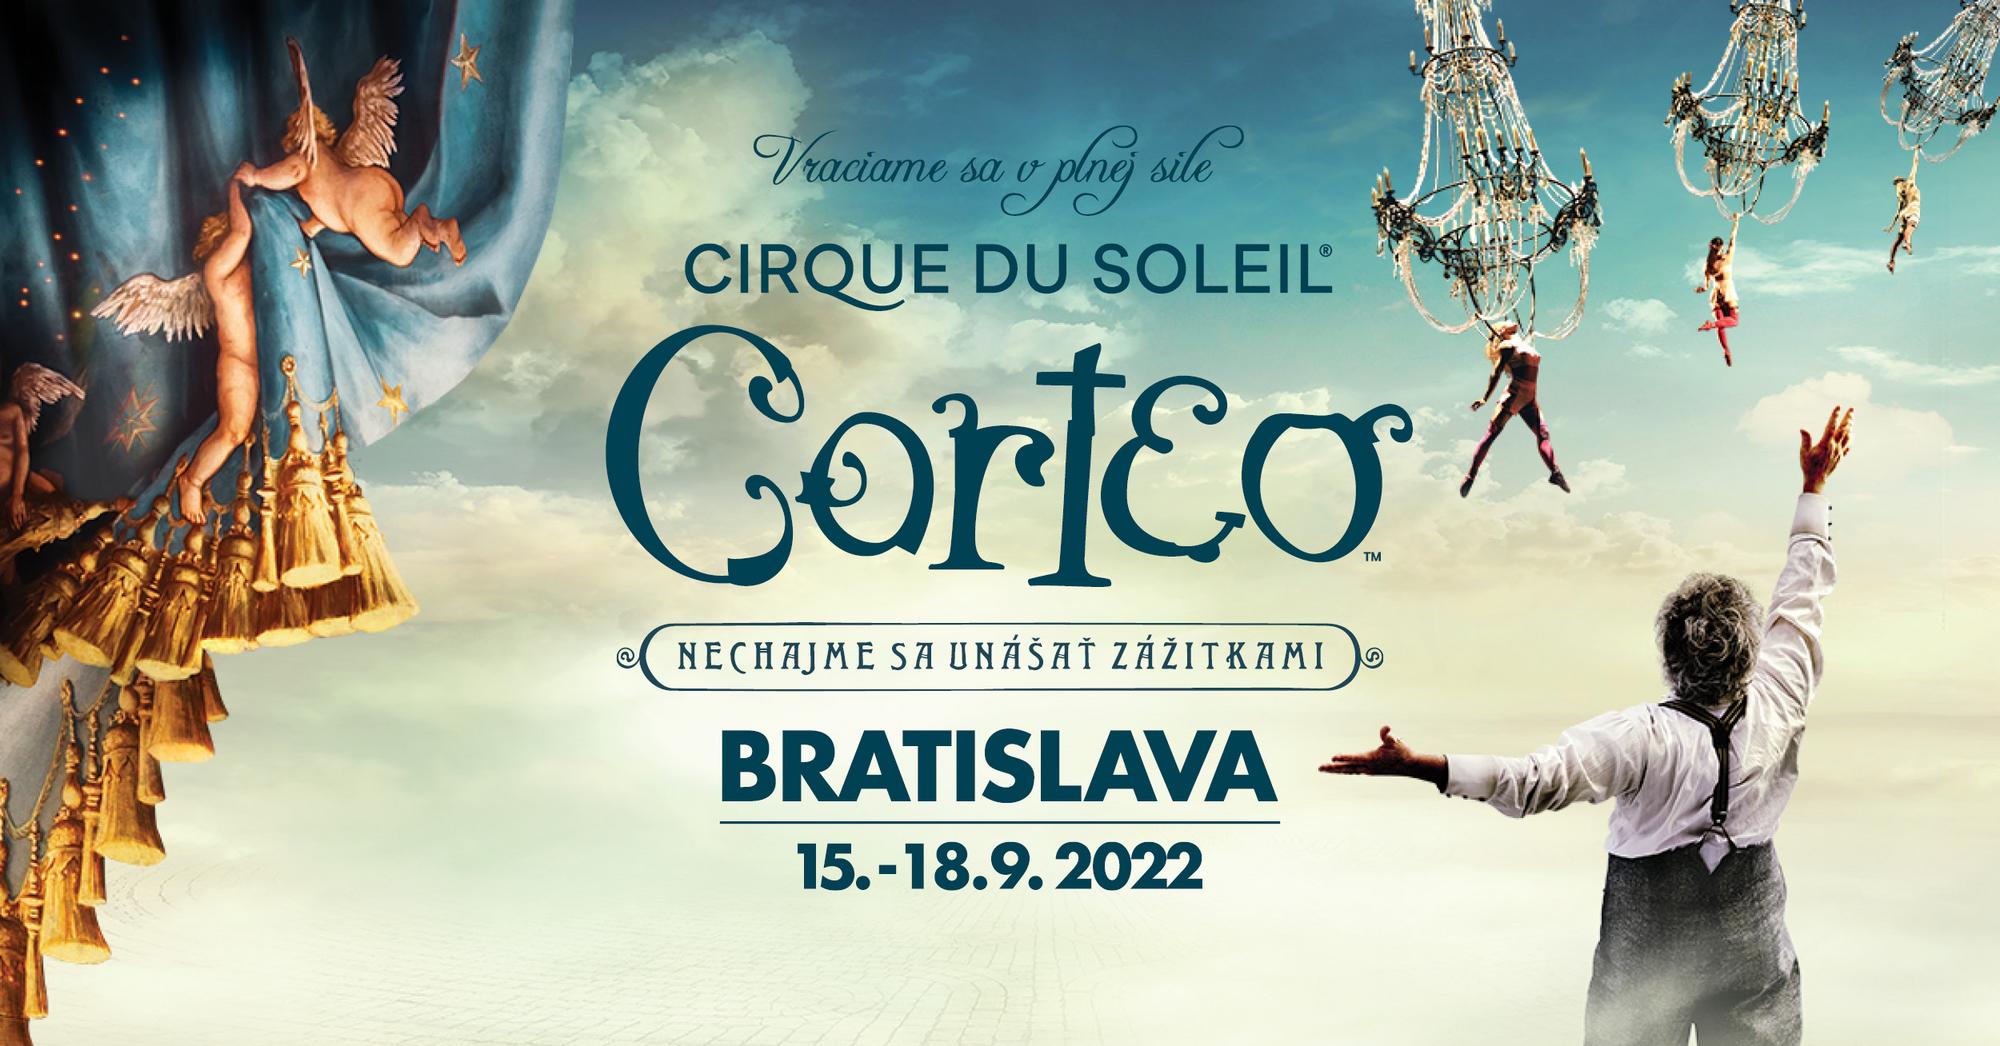 Cirque du Soleil budete môcť vidieť v septembri aj v Bratislave.